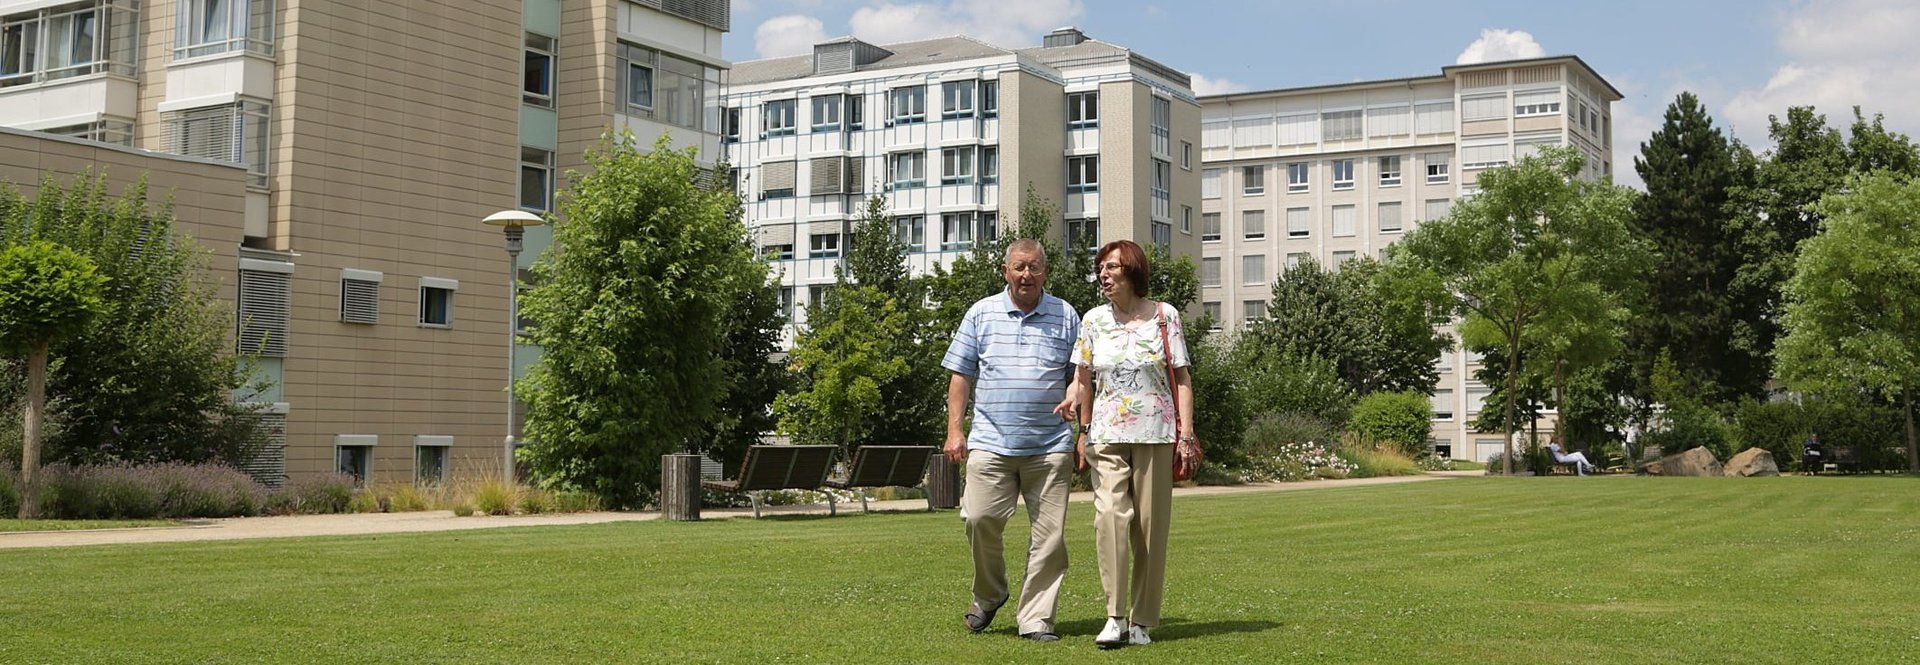 Paar spaziert im Patientenpark